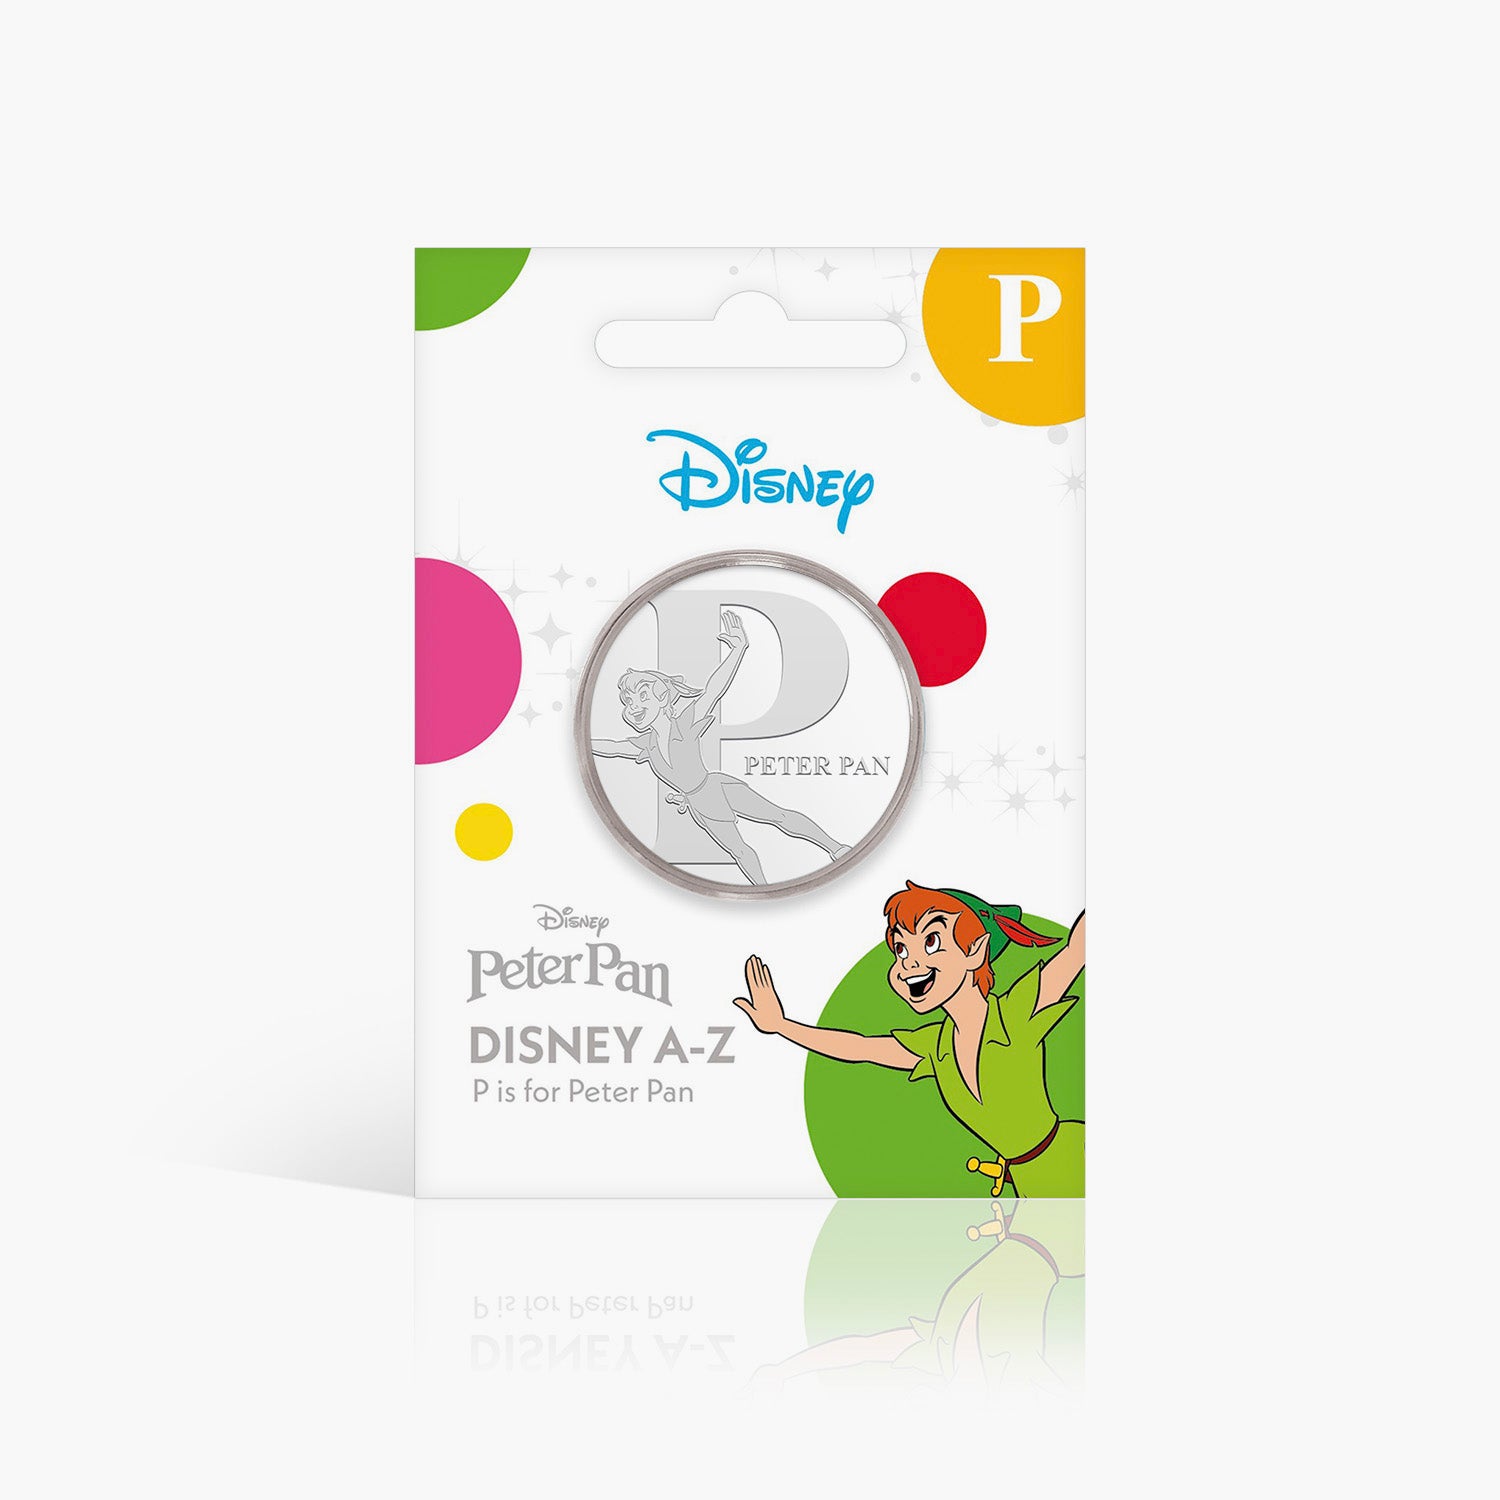 P est pour Peter Pan plaqué argent commémoratif